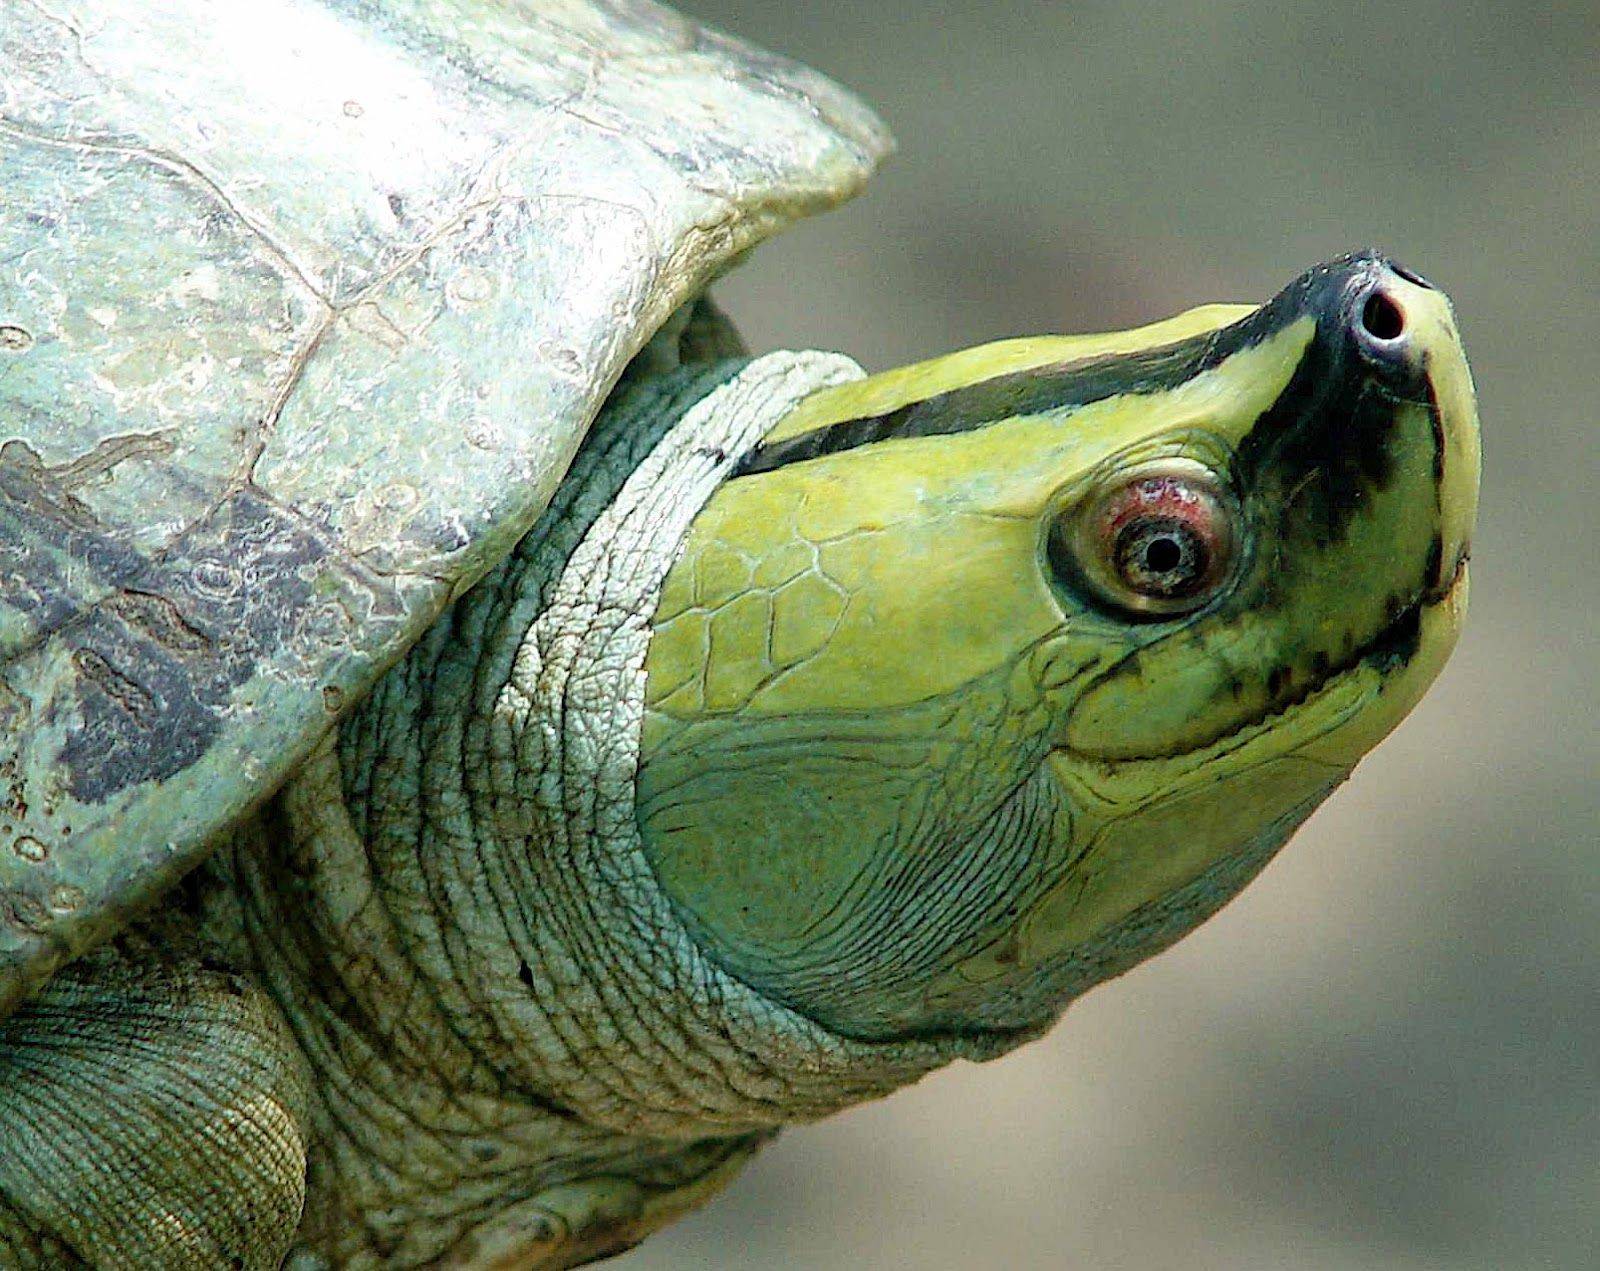 Черепахи в россии: какие разновидности живут и водятся в нашей природе